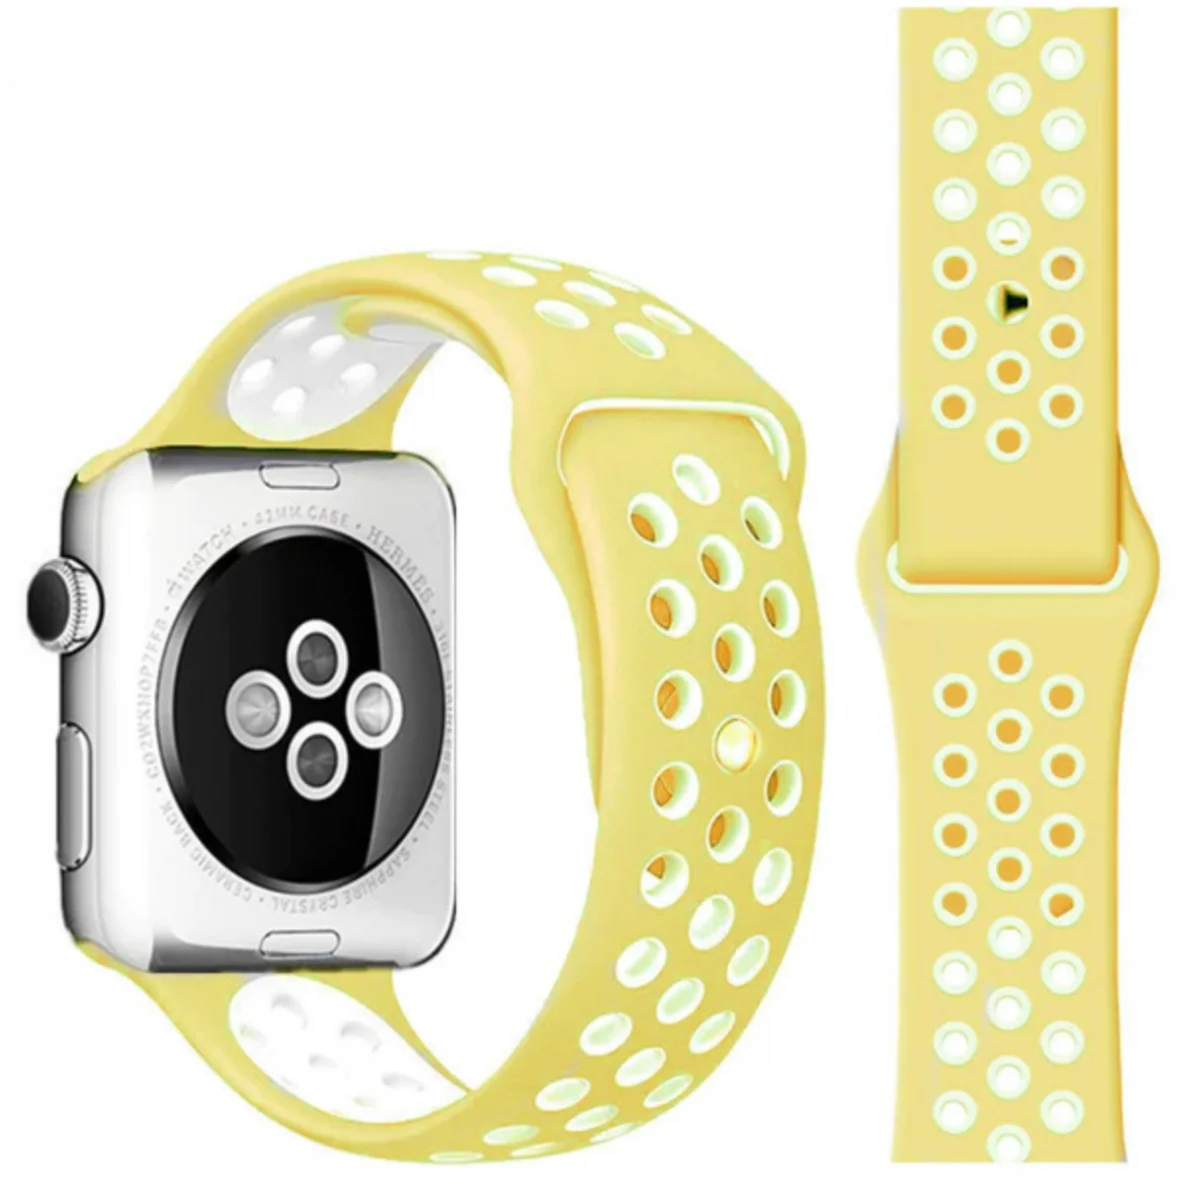 Řemínek iMore SPORT pro Apple Watch Series 1/2/3 (38mm) - Jemně Žlutý/Bílý